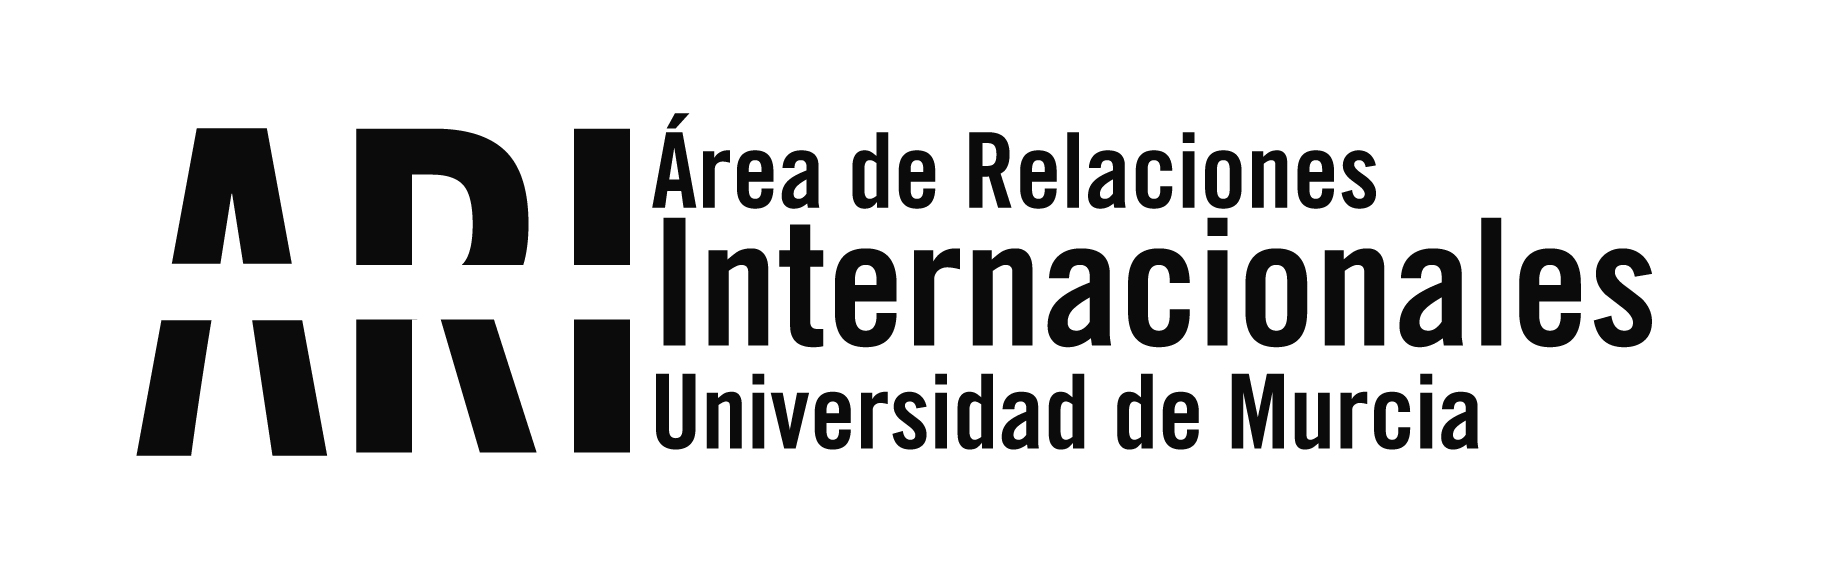 Murcia da la bienvenida a los casi mil alumnos internacionales que pasarán este curso por la UMU - Área de Relaciones Internacionales